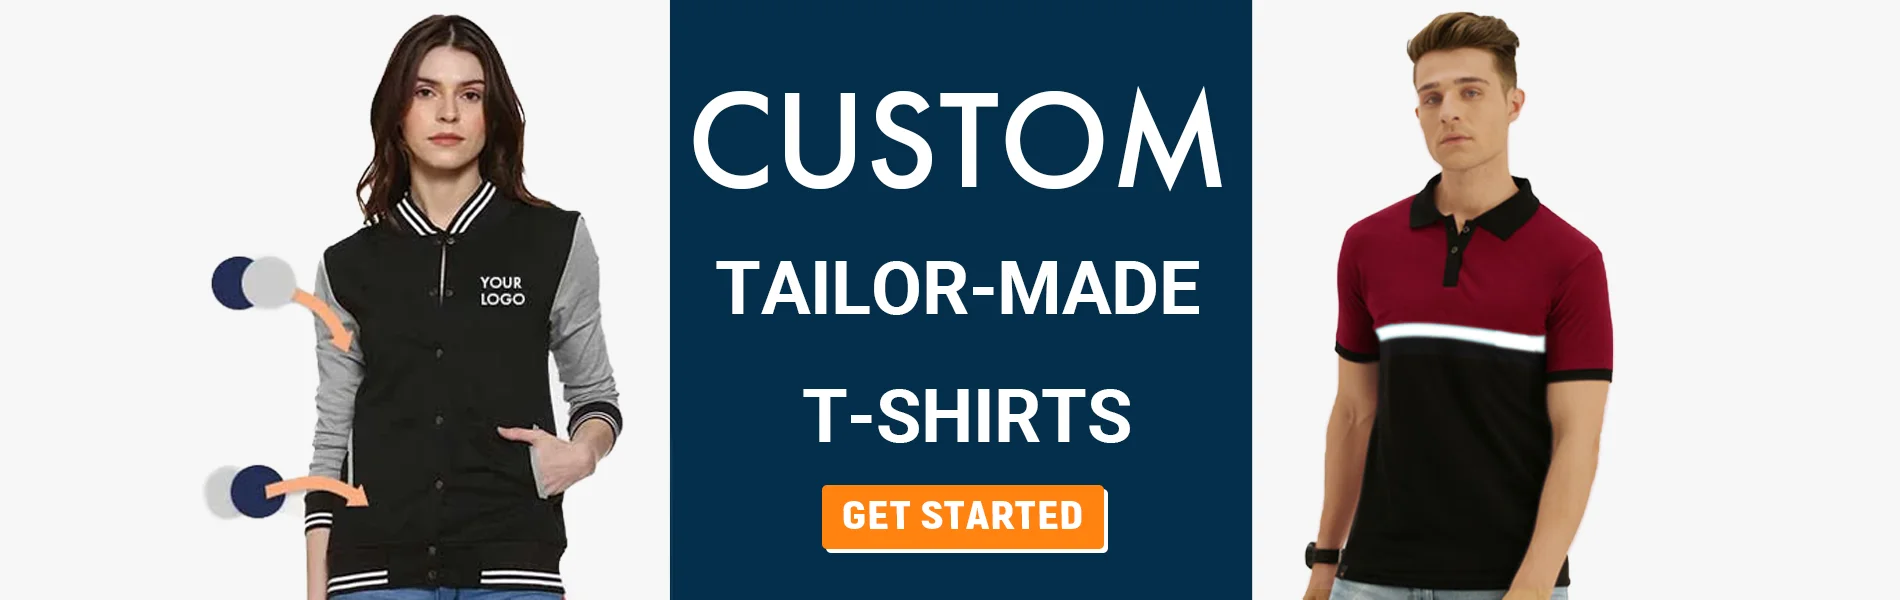 custom tailormade t-shirts chandigarh